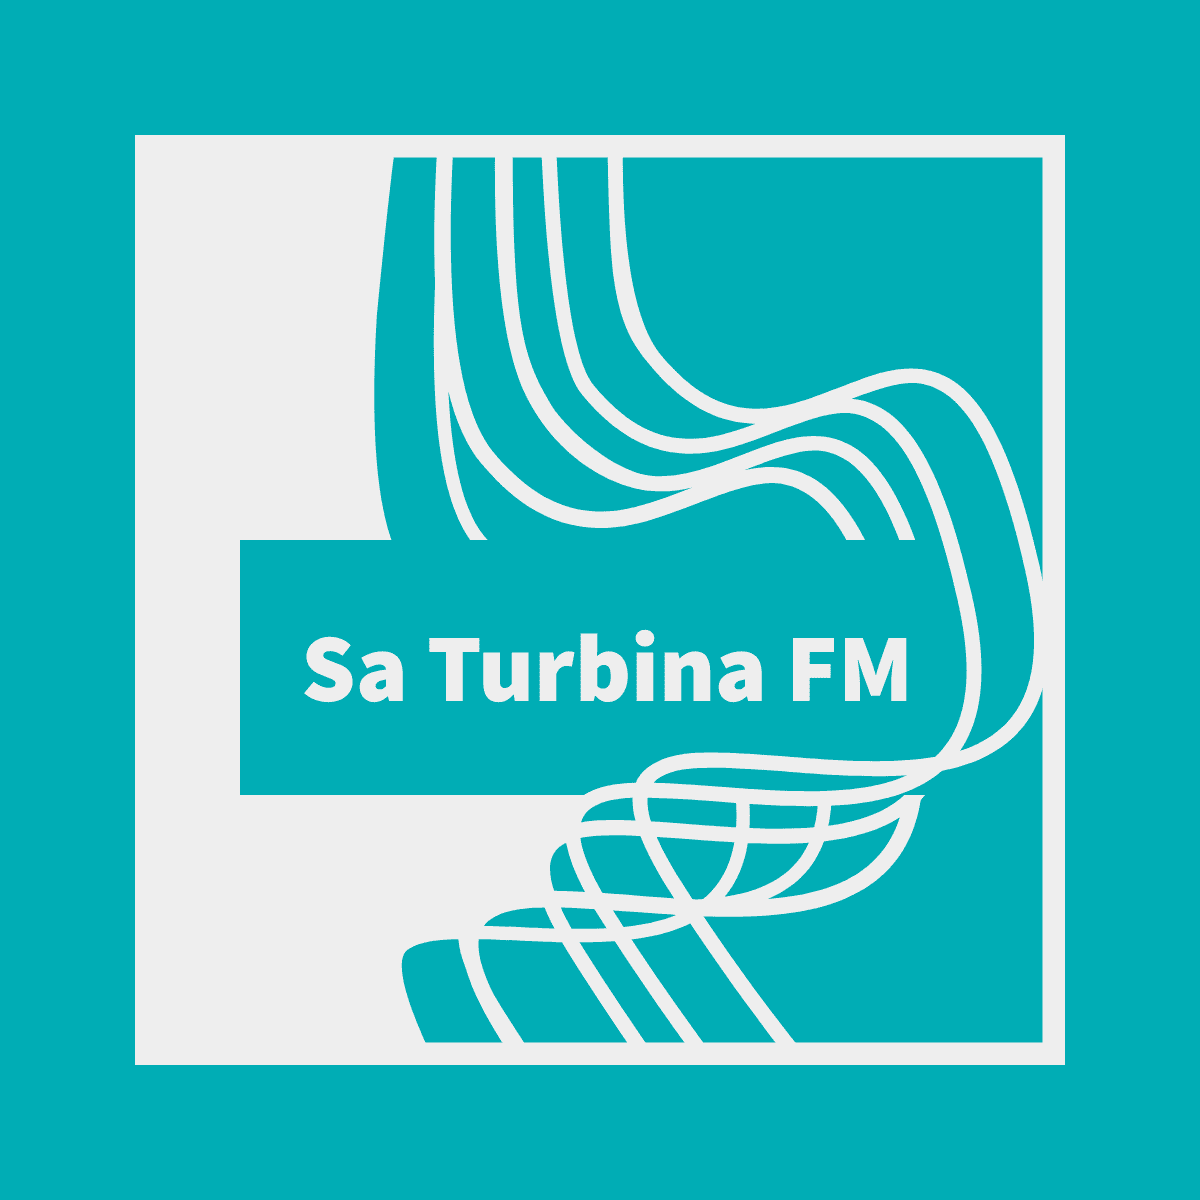 Sa Turbina FM